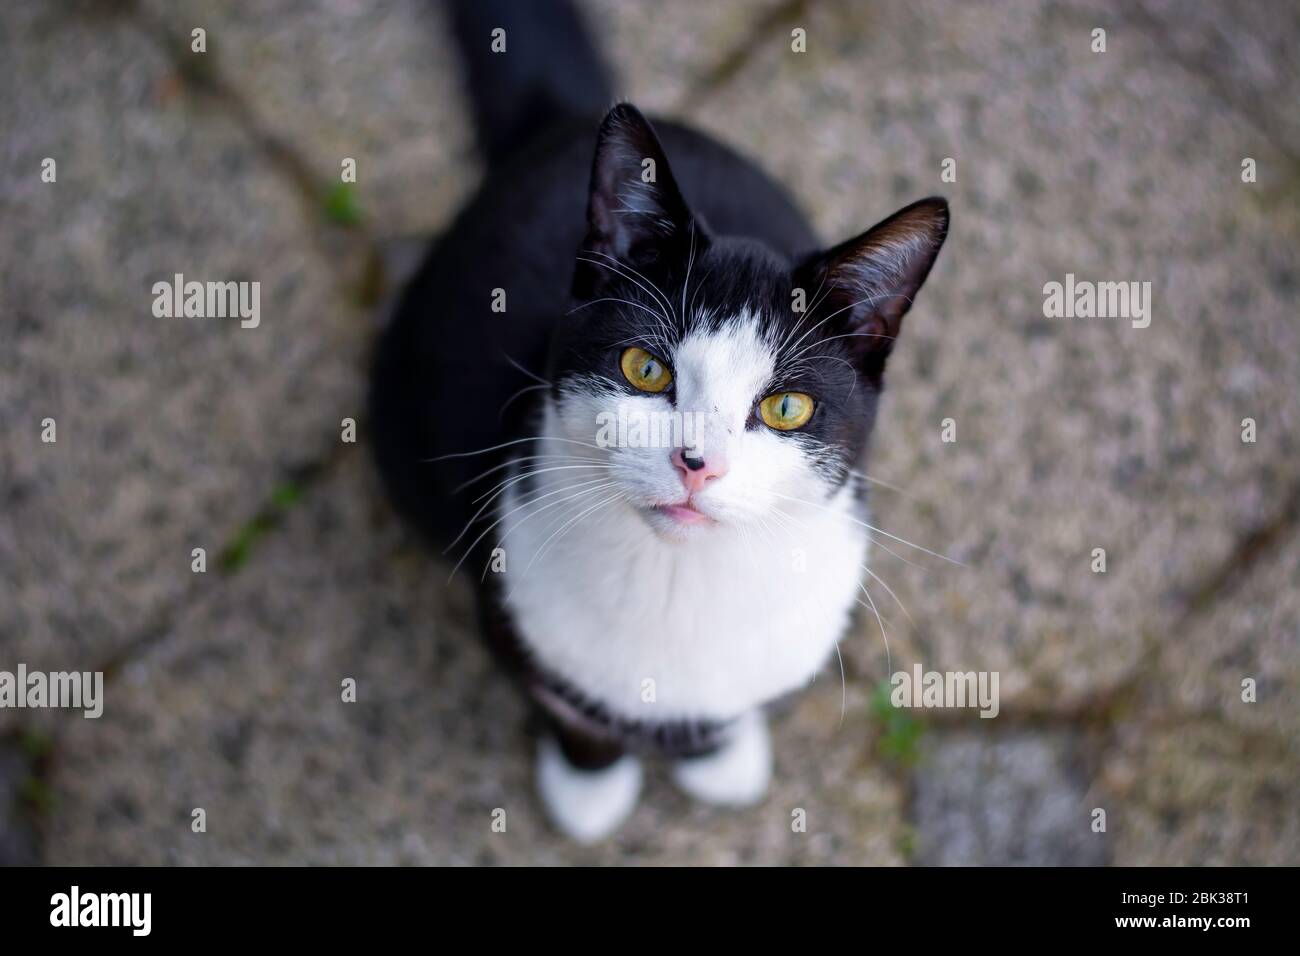 Schwarz-weiße Katze mit gelben Augen, die draußen auf dem Boden sitzt und aufblickt und die Kamera anstarrt Stockfoto